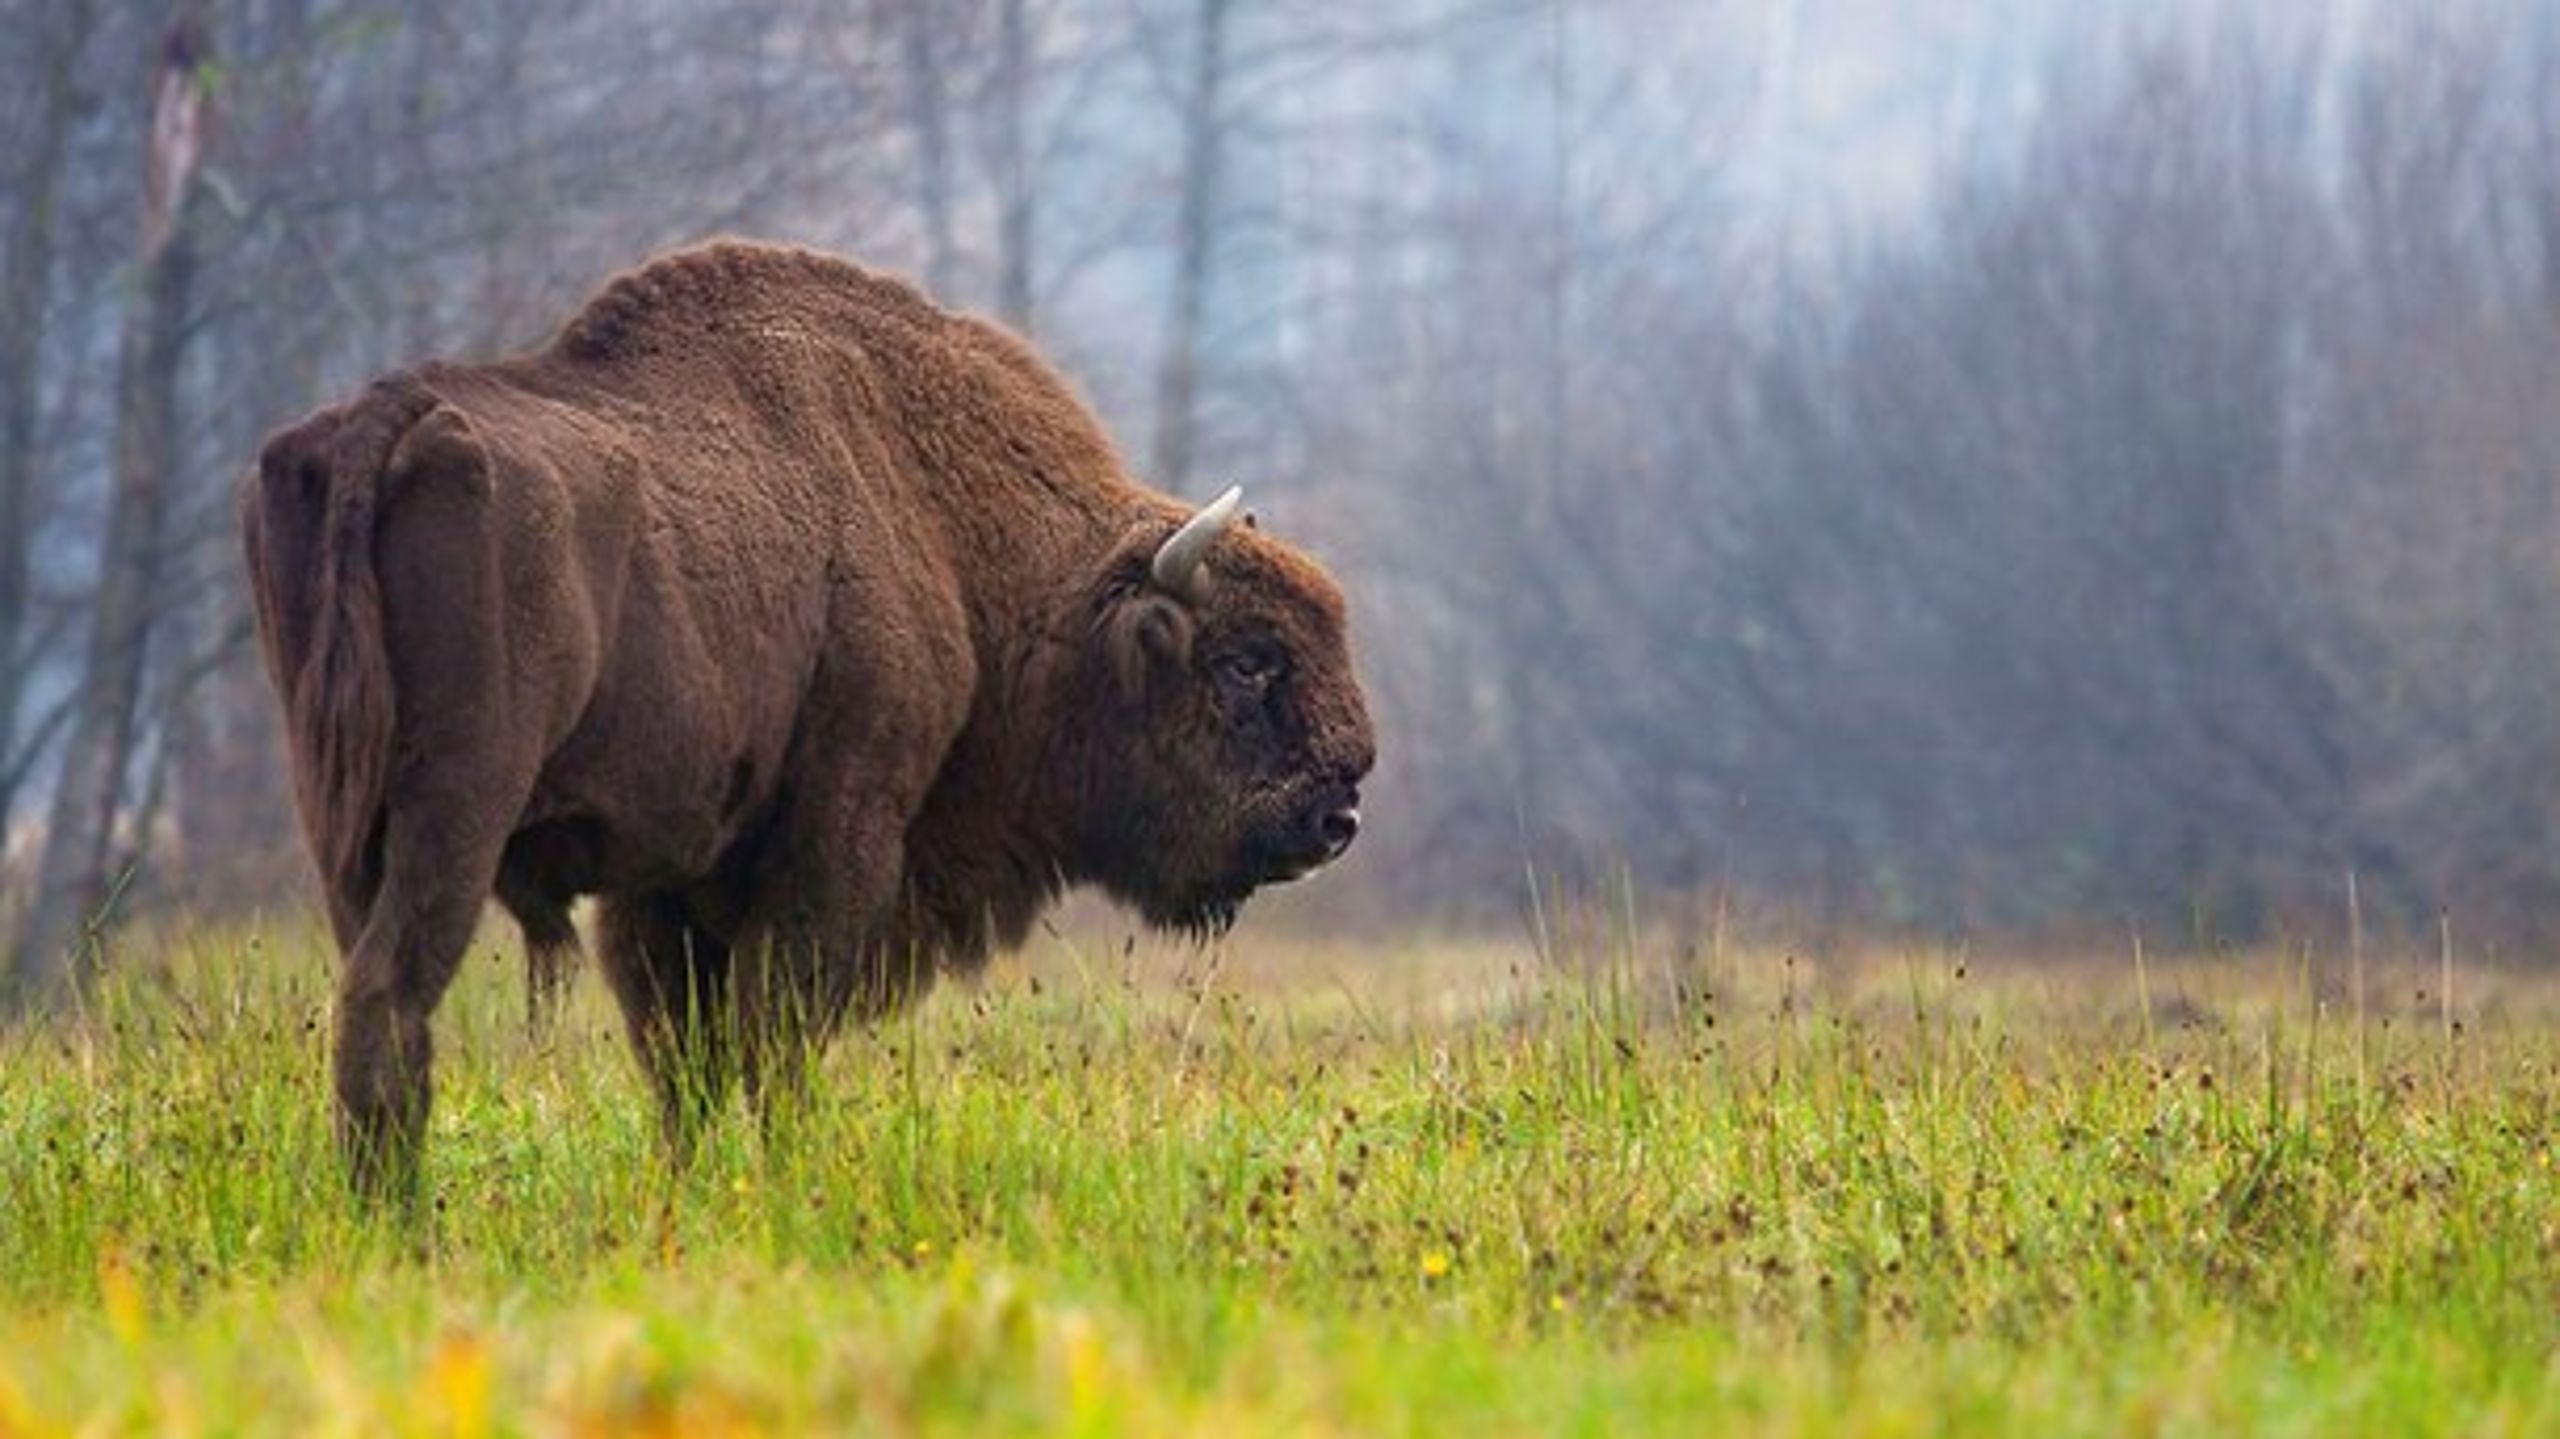 Naturstyrelsen eksperimenterer nogle steder med, at naturen får lov at passe sig selv. Blandt andet har styrelsen sat bisoner ud på Bornholm, skriver&nbsp;Peter Ilsøe.&nbsp;